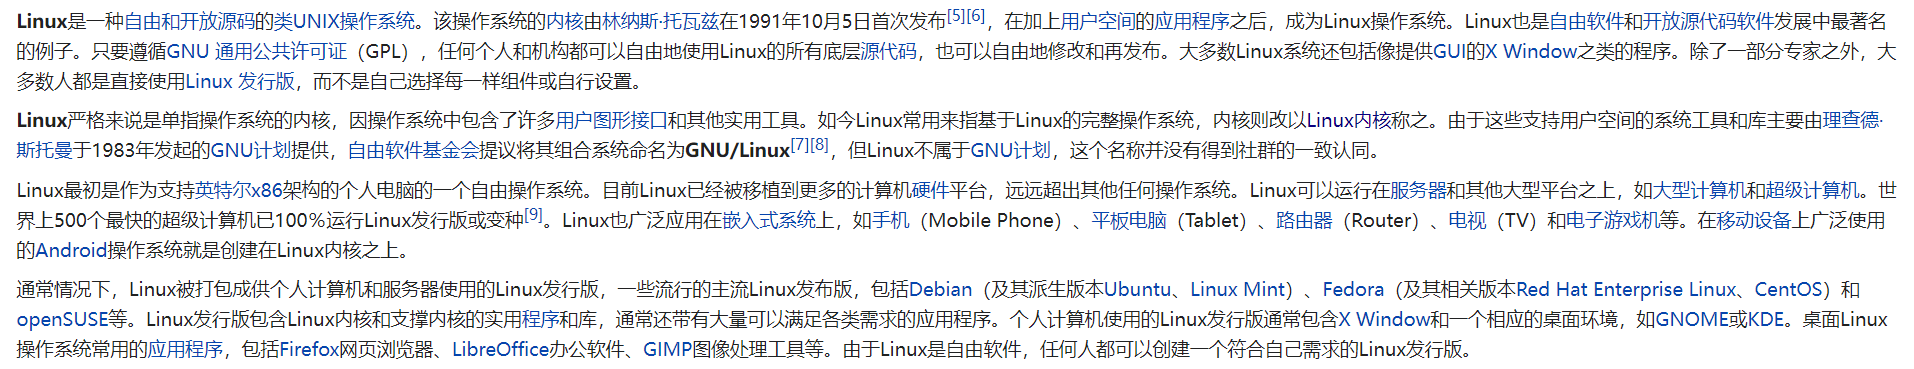 【linux学习笔记】一、Linux简介